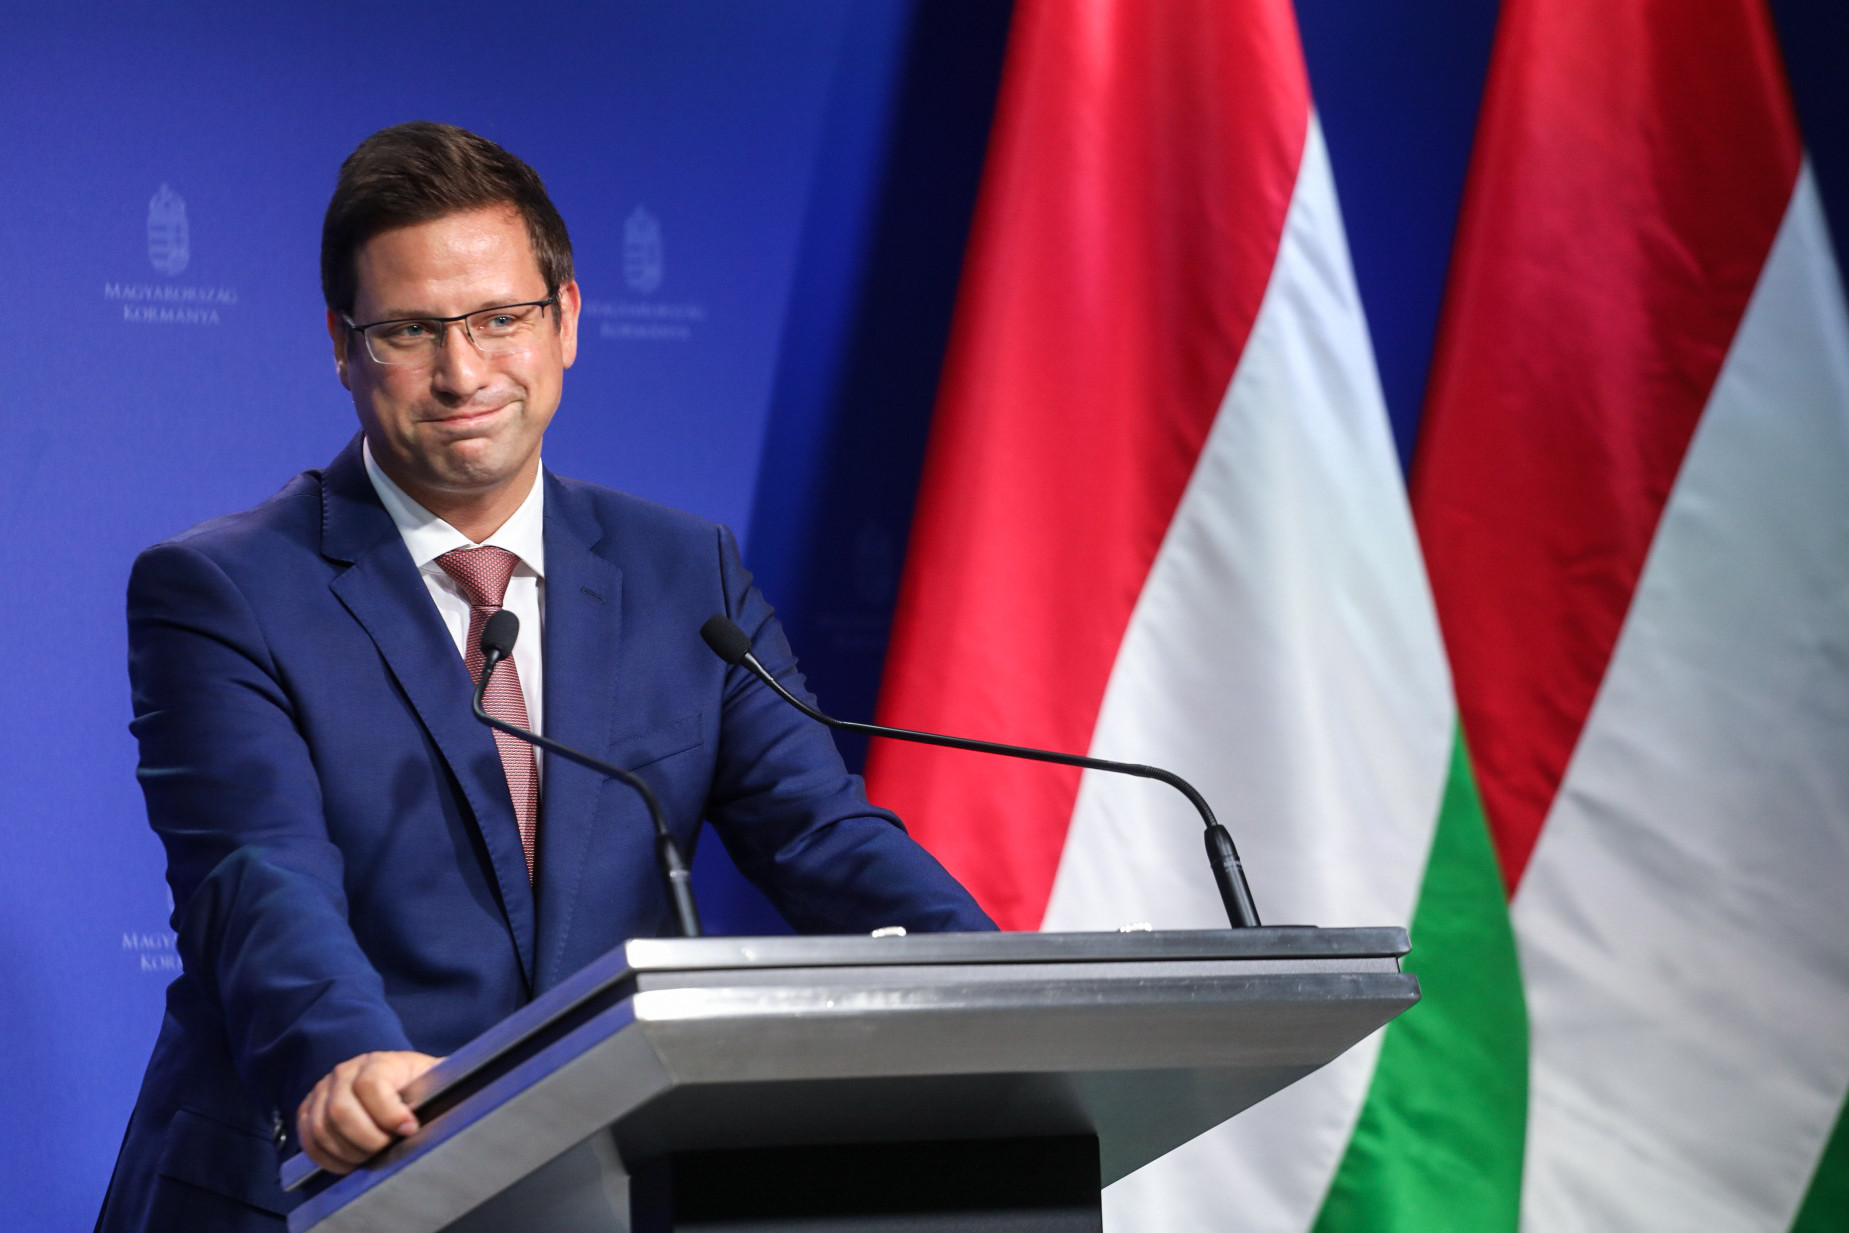 Gulyás hatalommal való visszaéléssel vádolja a Magyar Orvosi Kamarát